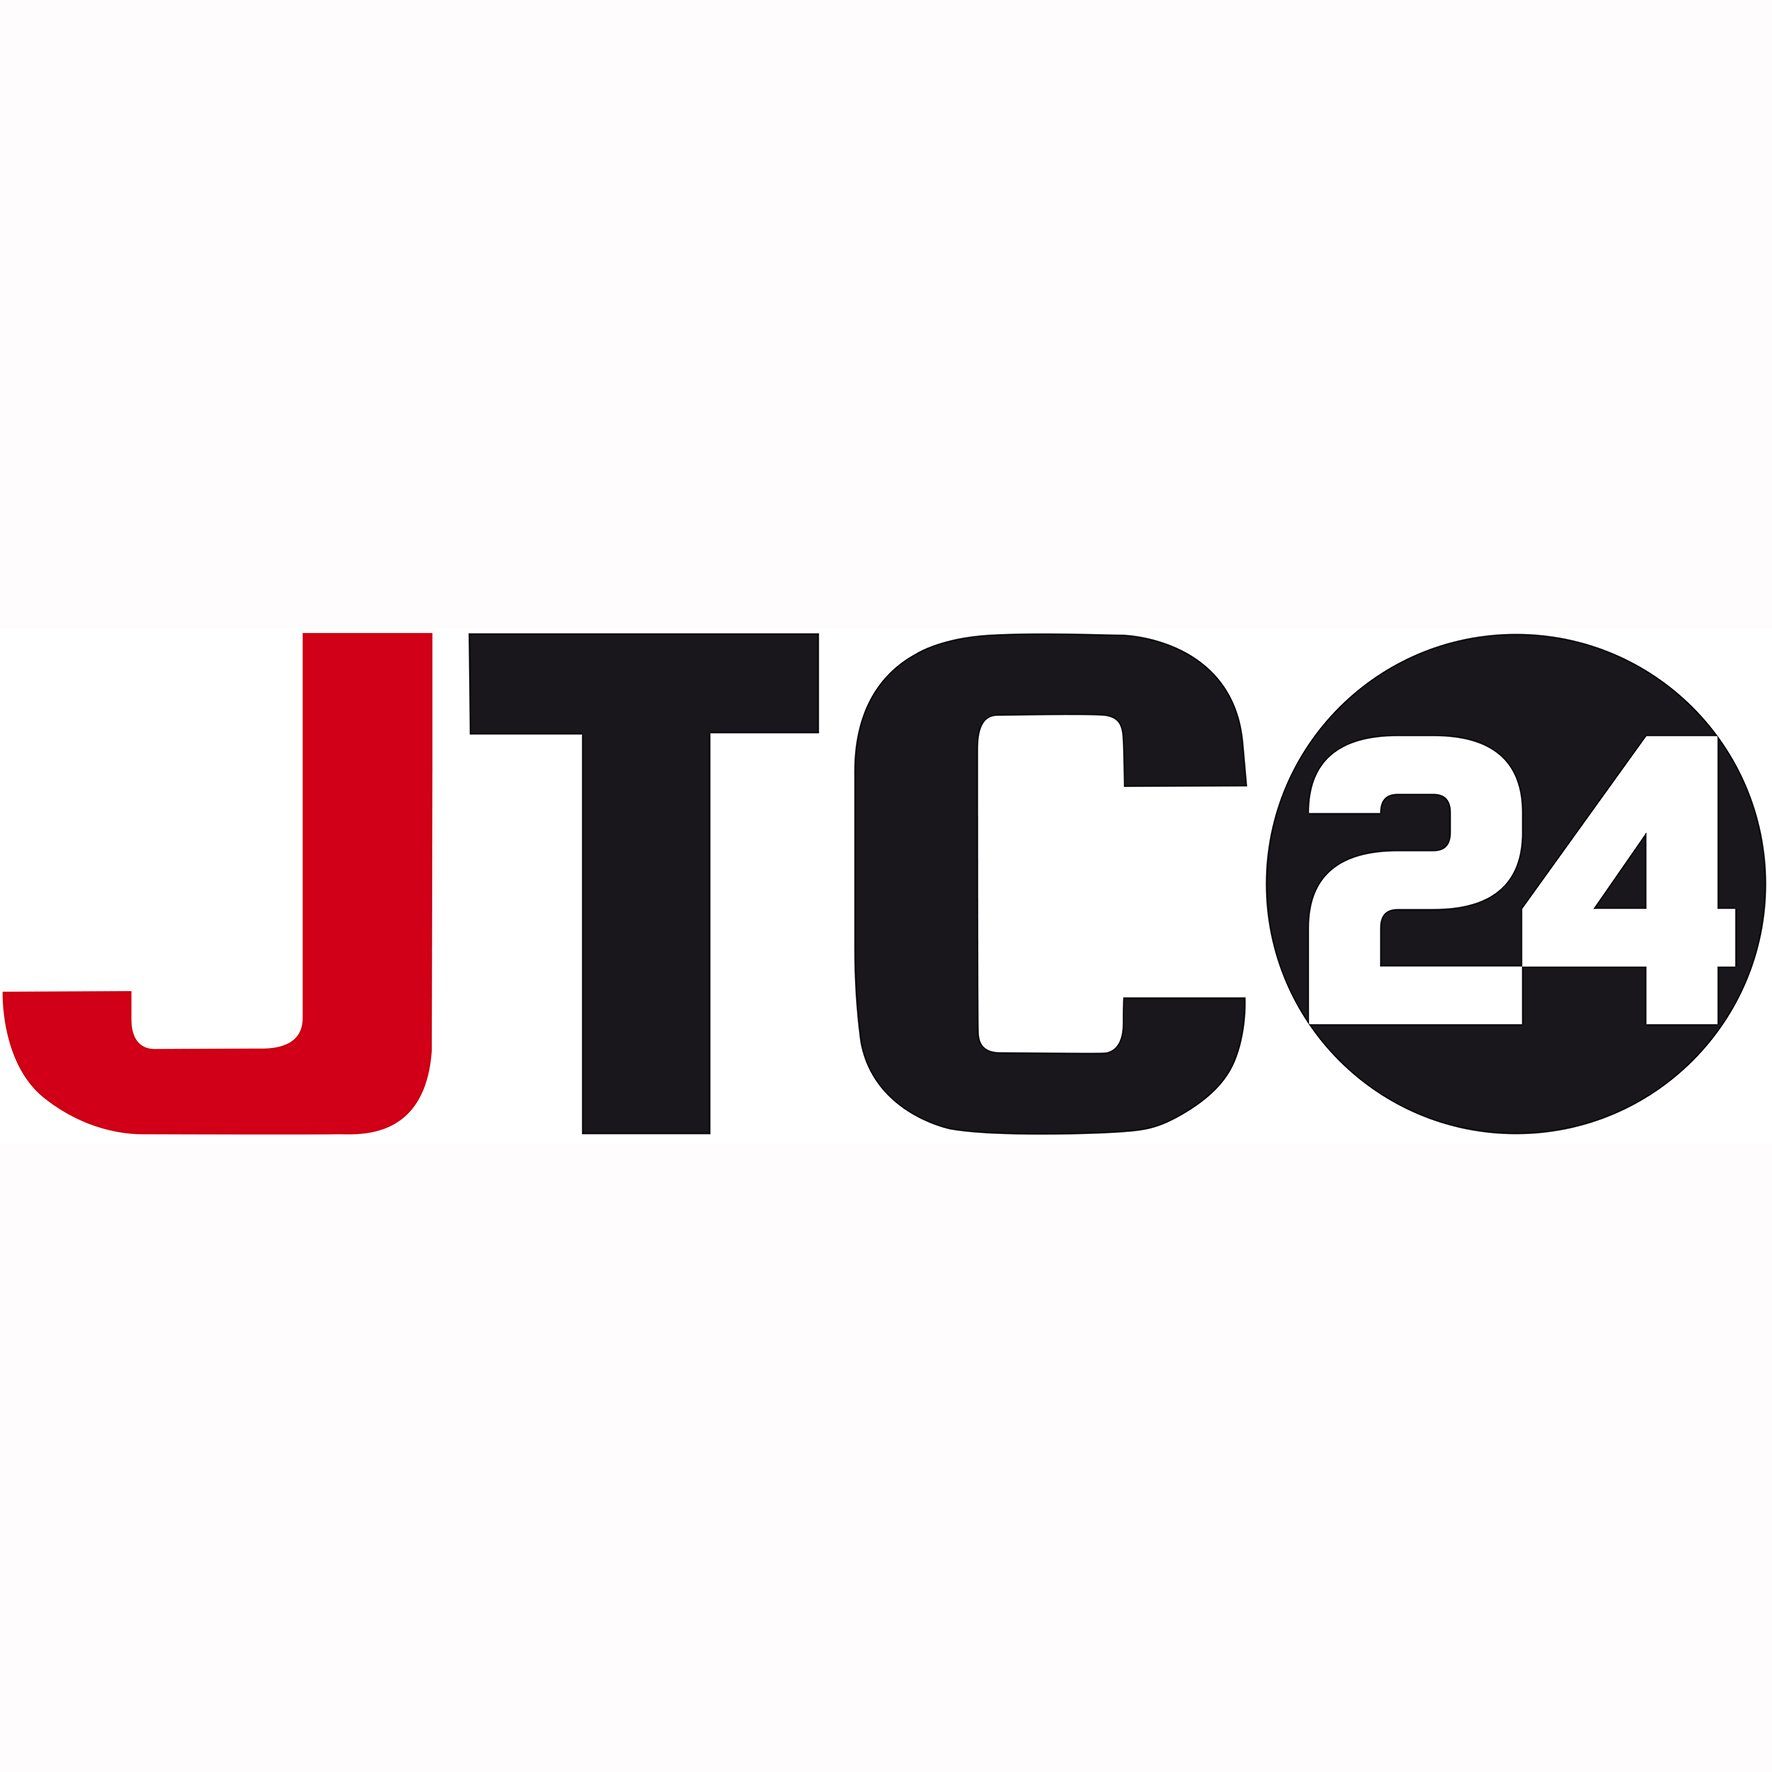 JTC-24